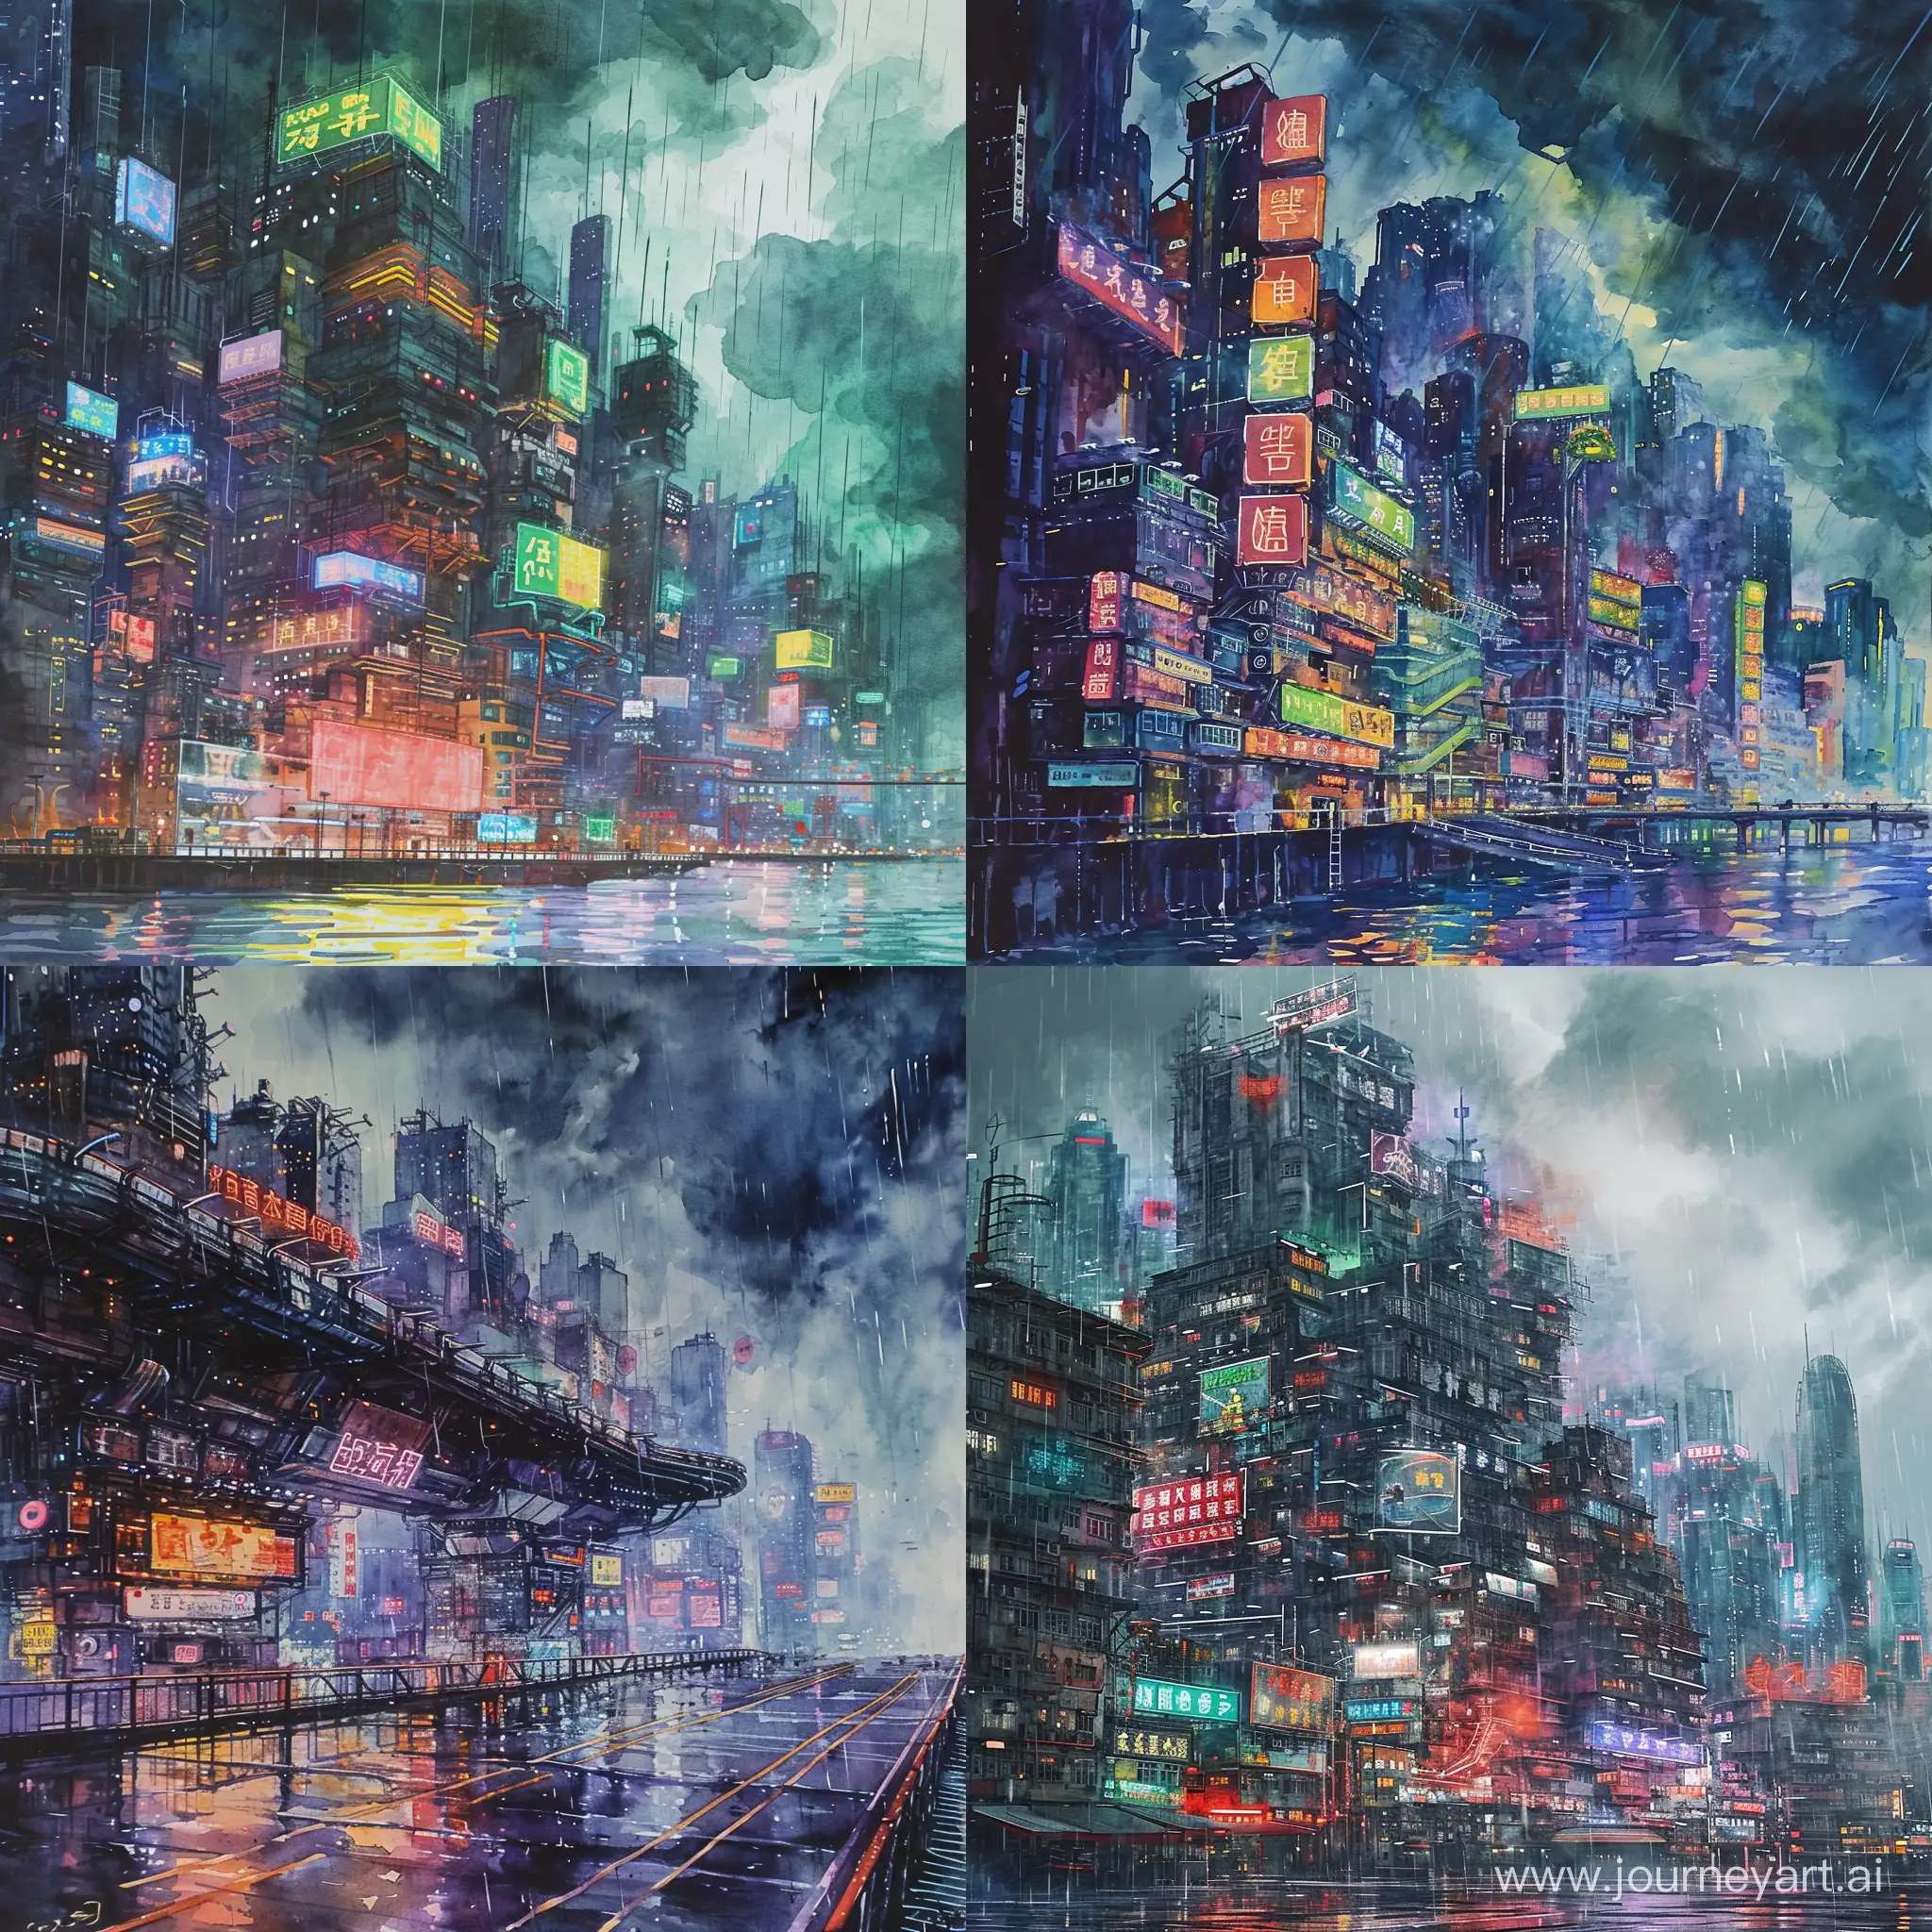 Futuristic-Cyberpunk-Cityscape-in-Neon-Lights-Amidst-Storm